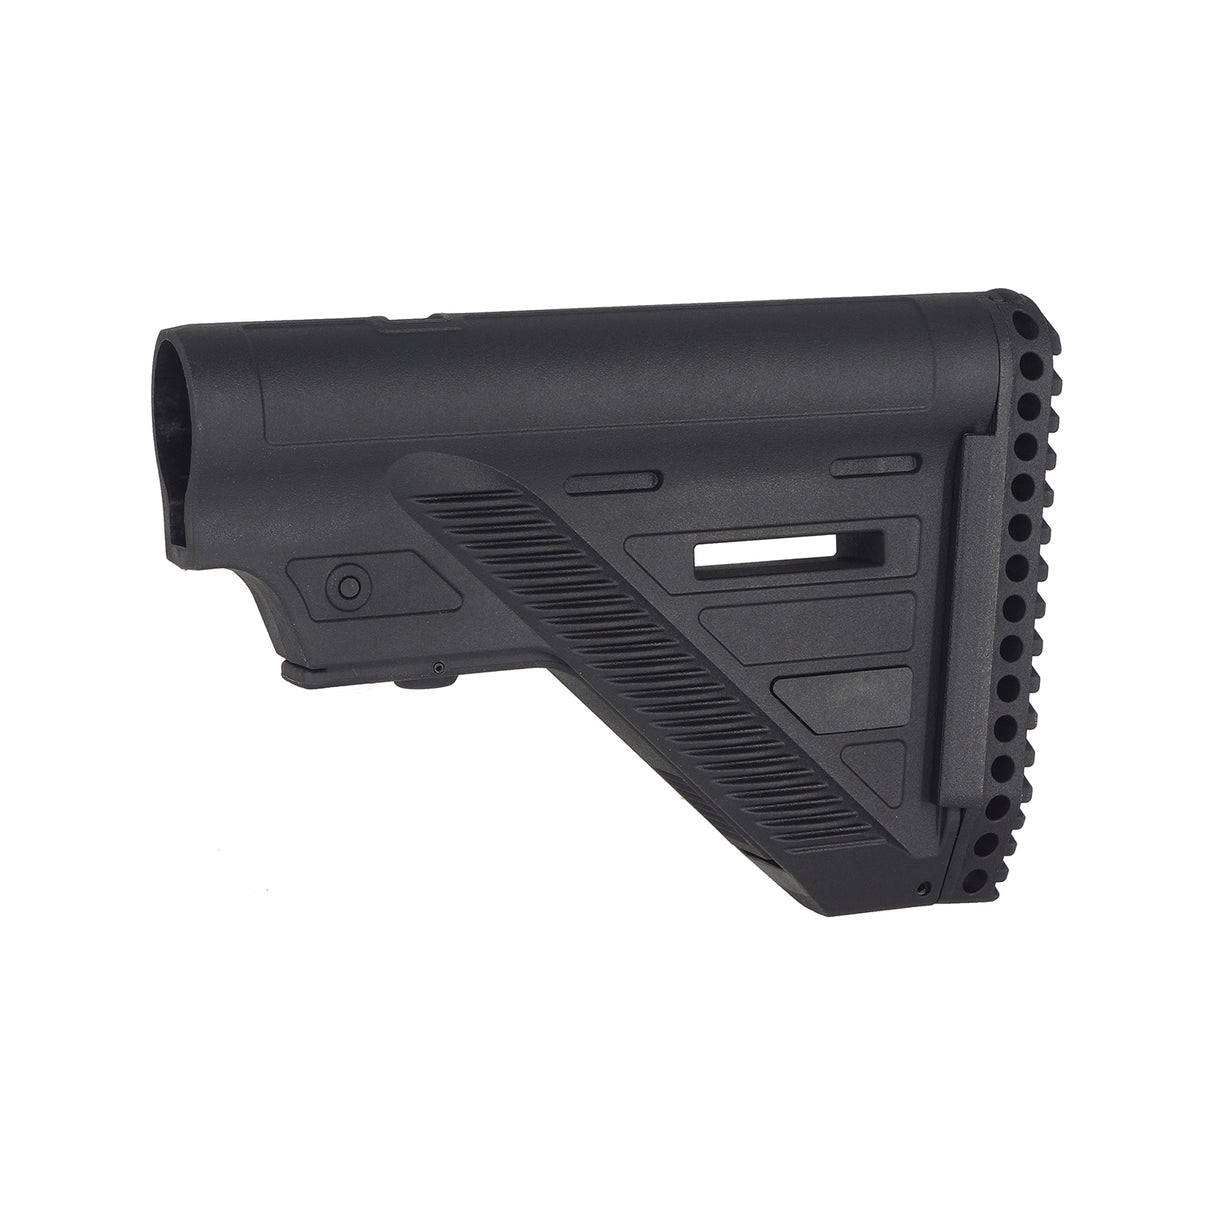 Guns Modify 416 A5 Style Slim Stock ( GM0558 / GM0559 )